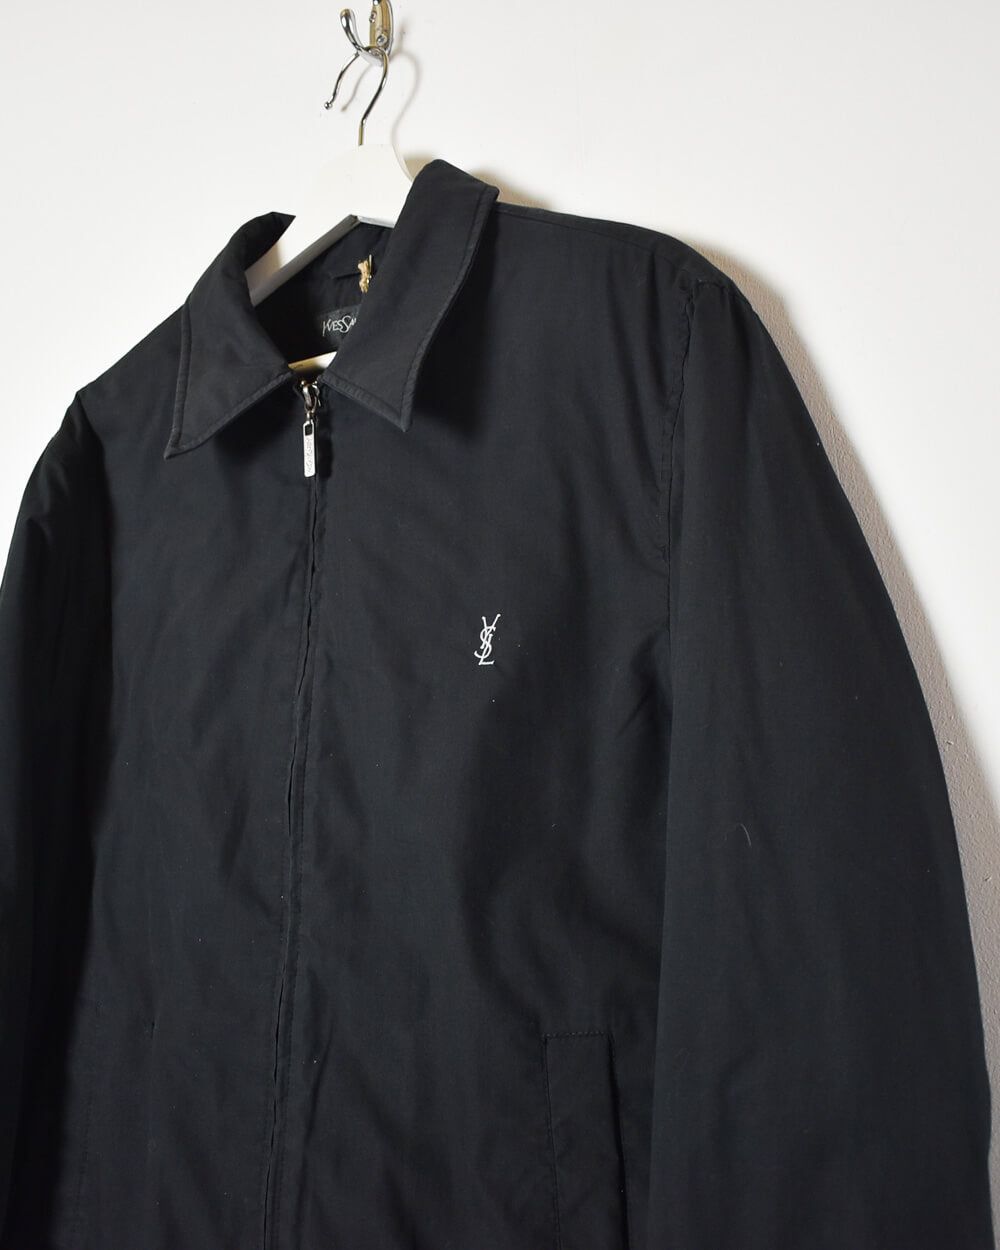 Black Yves Saint Laurent Harrington Jacket - Medium